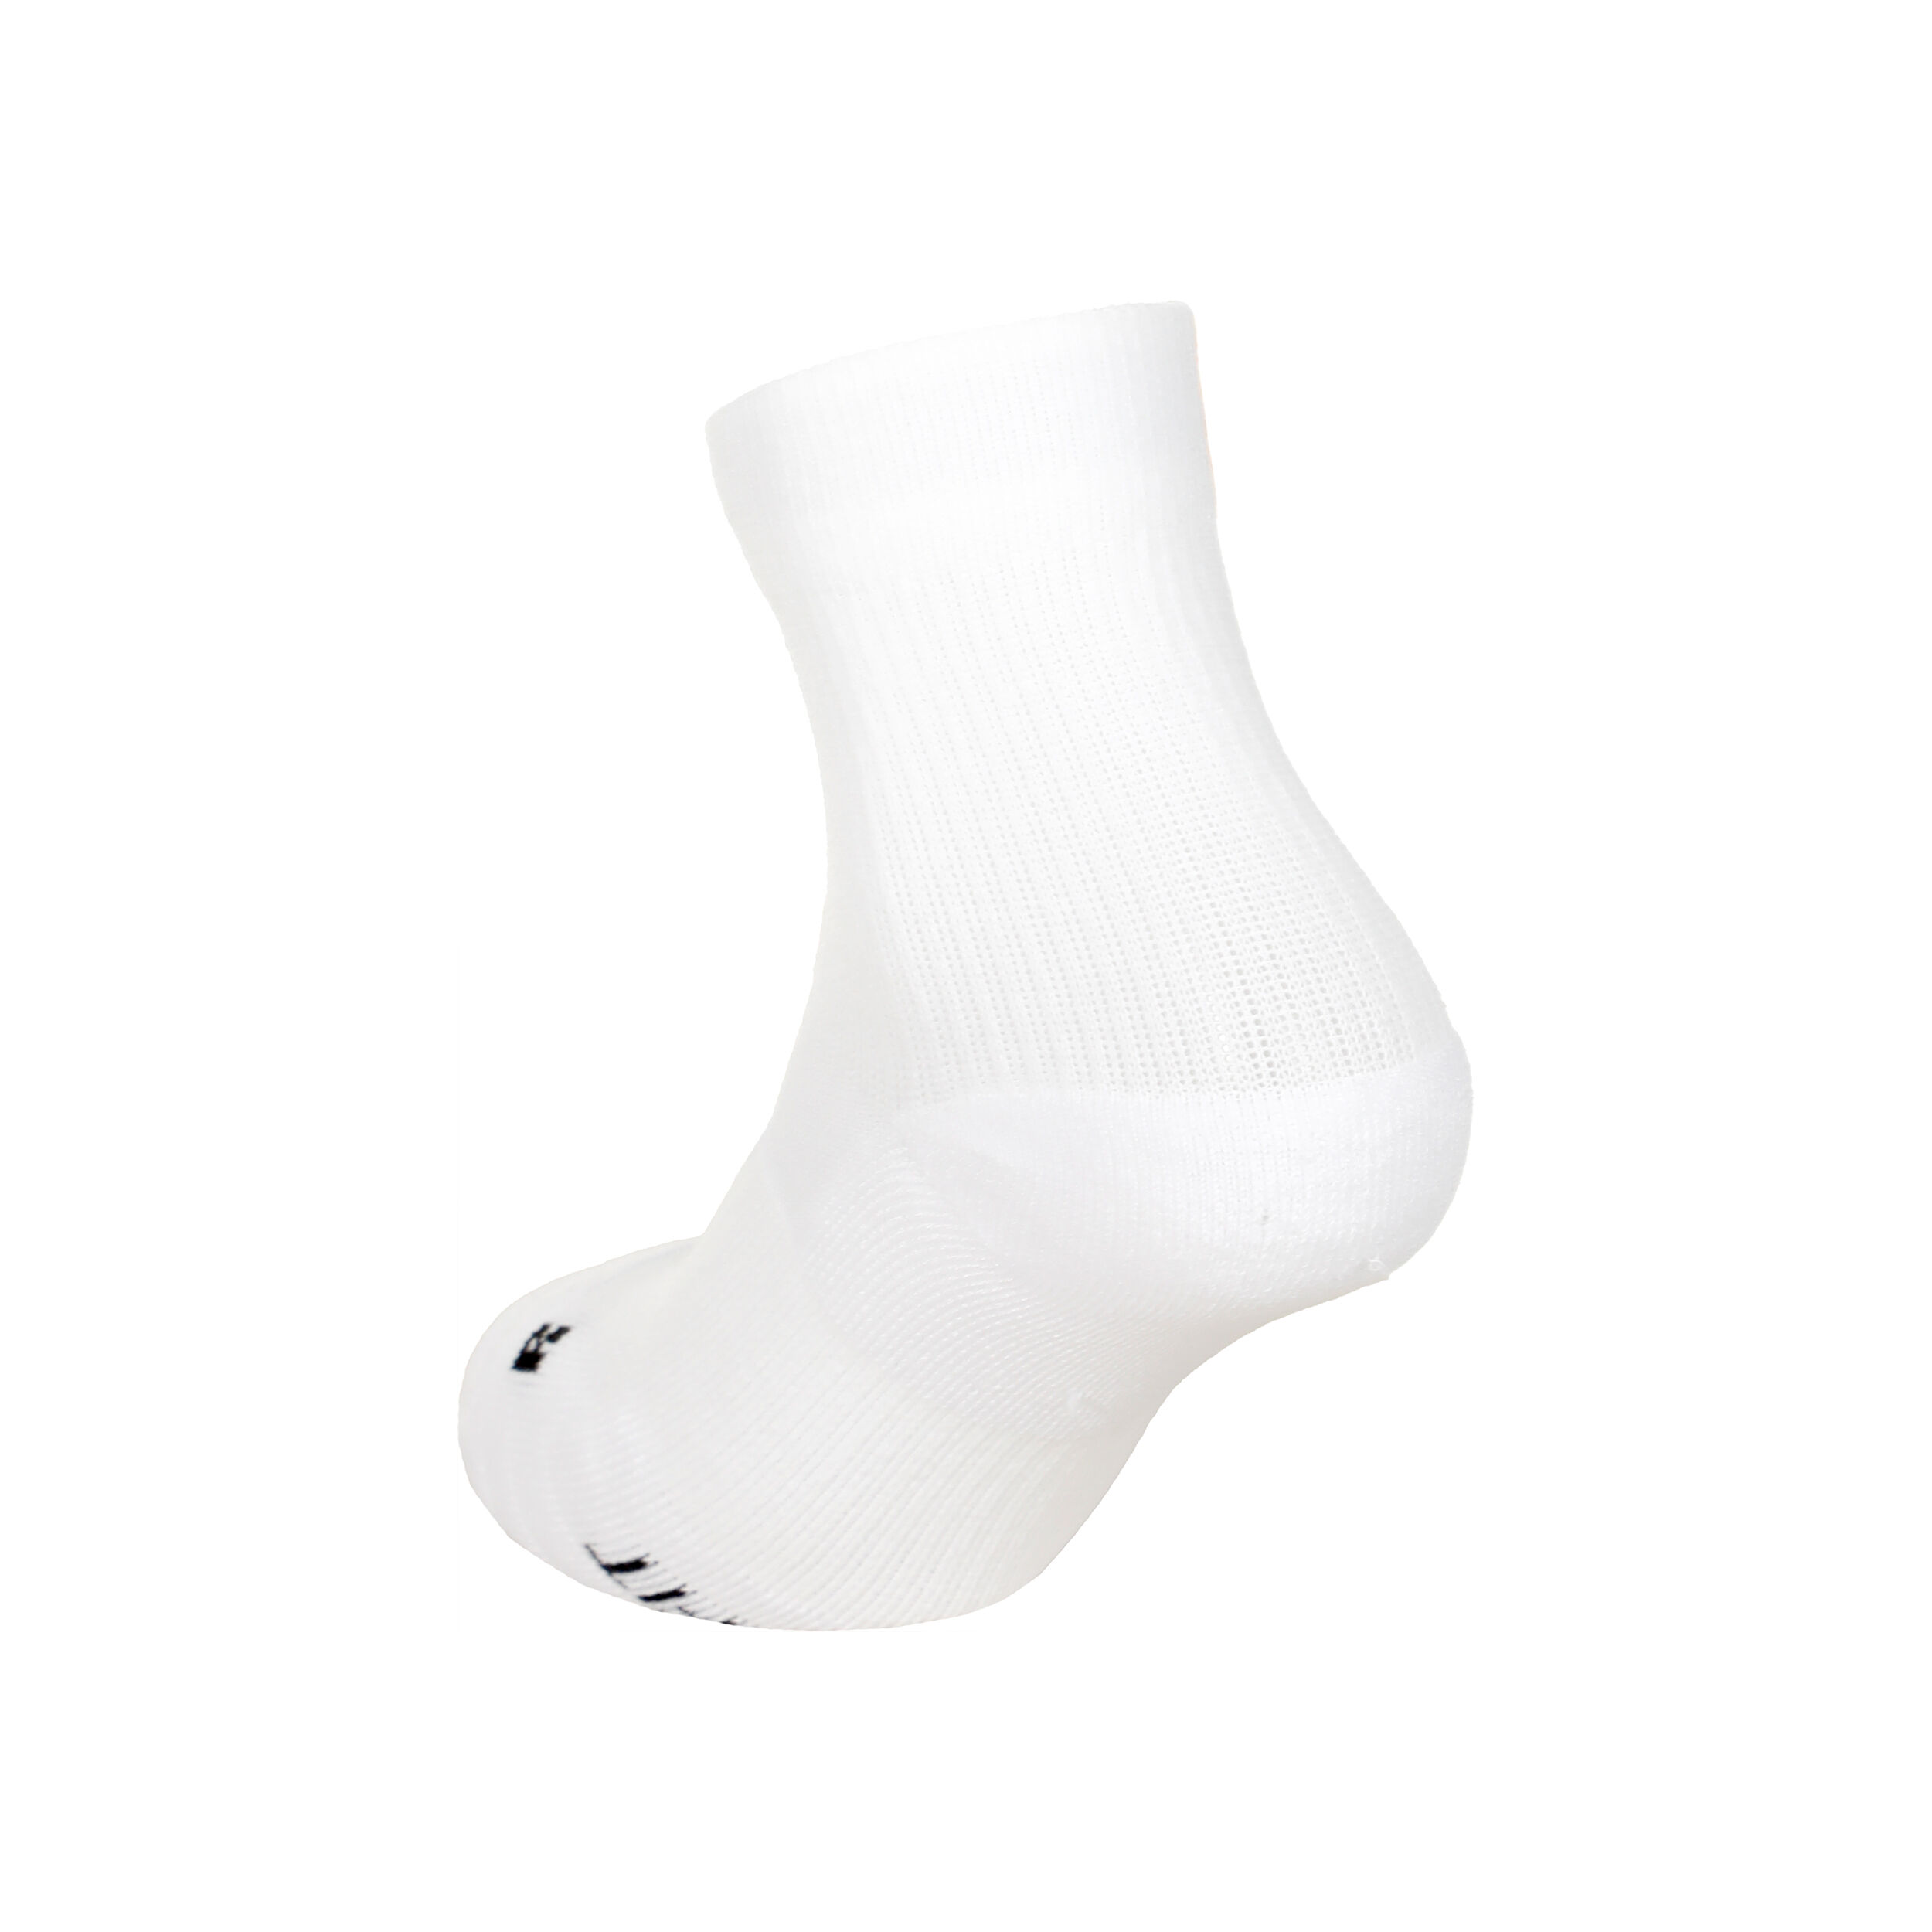 Court Multiplier Max Sports Socks 2 Pack - White, Black